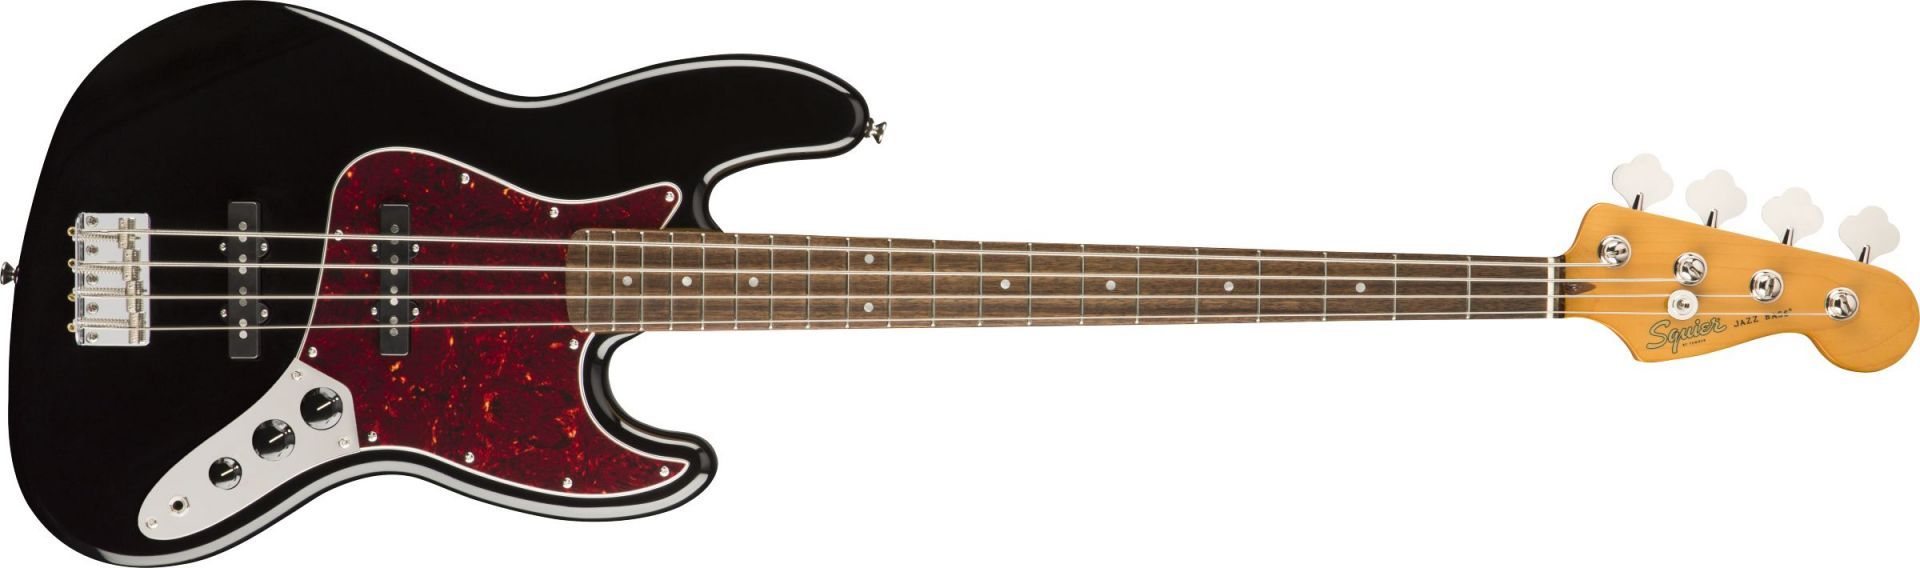 Squier Classic Vibe 60s Jazz Bass Laurel Fingerboard Black